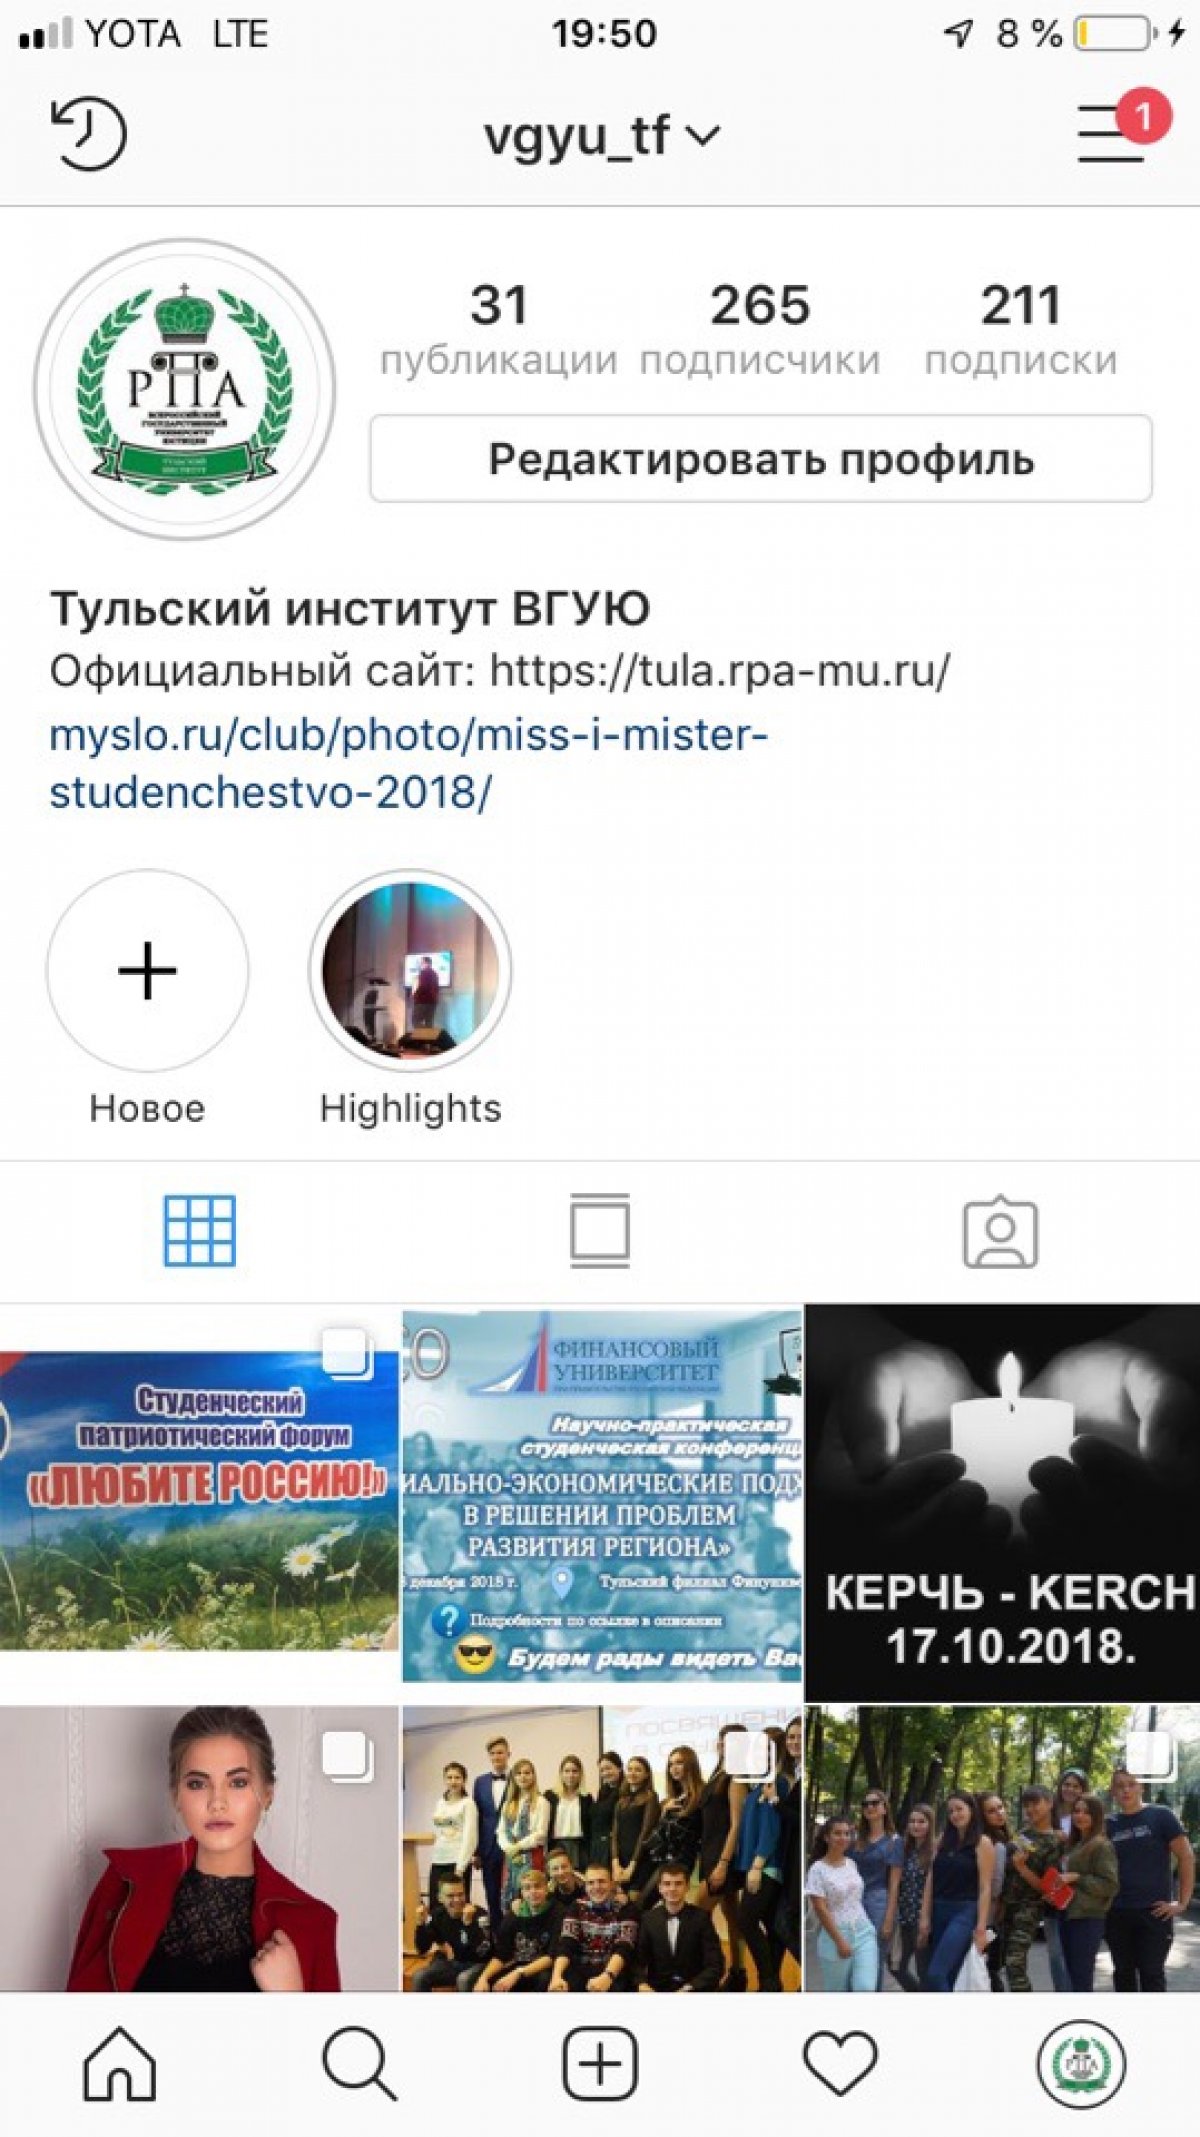 У нашего университета есть не только группа Вконтакте, но и профиль в инстаграмме, где публикуются самые интересные новости!